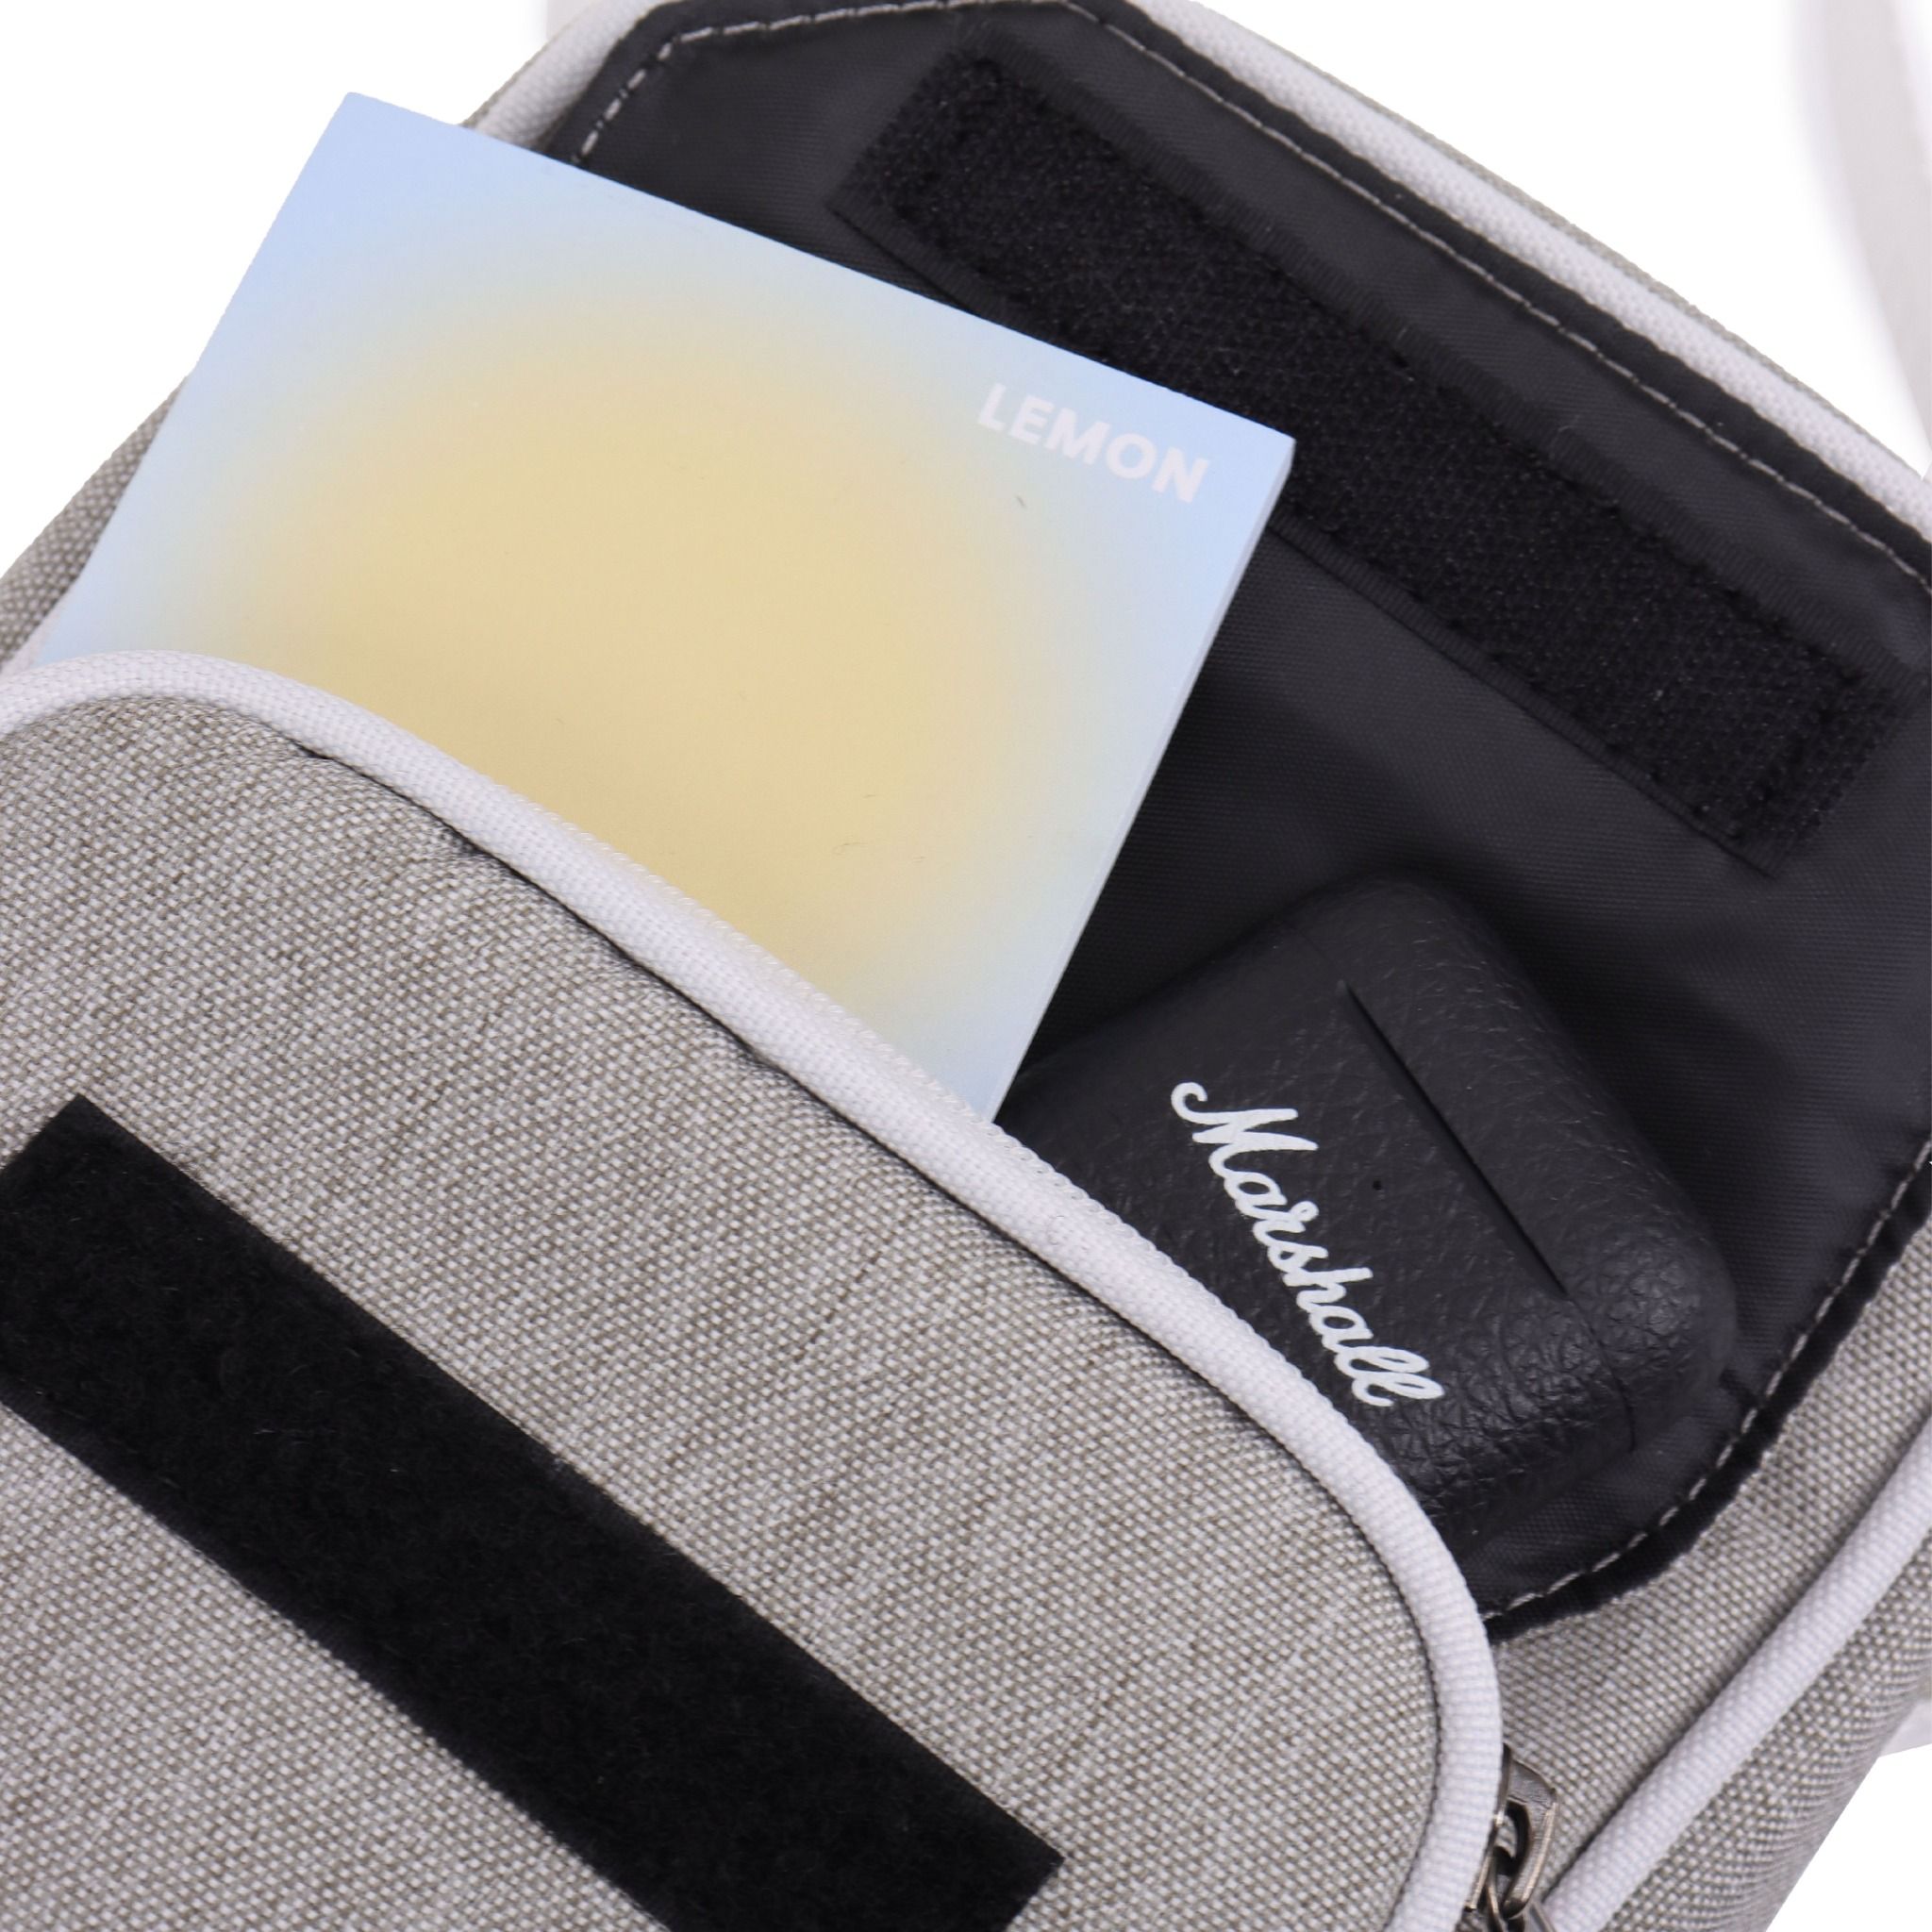  Scarab Daypack Shoulder Bag - Pale Silver 